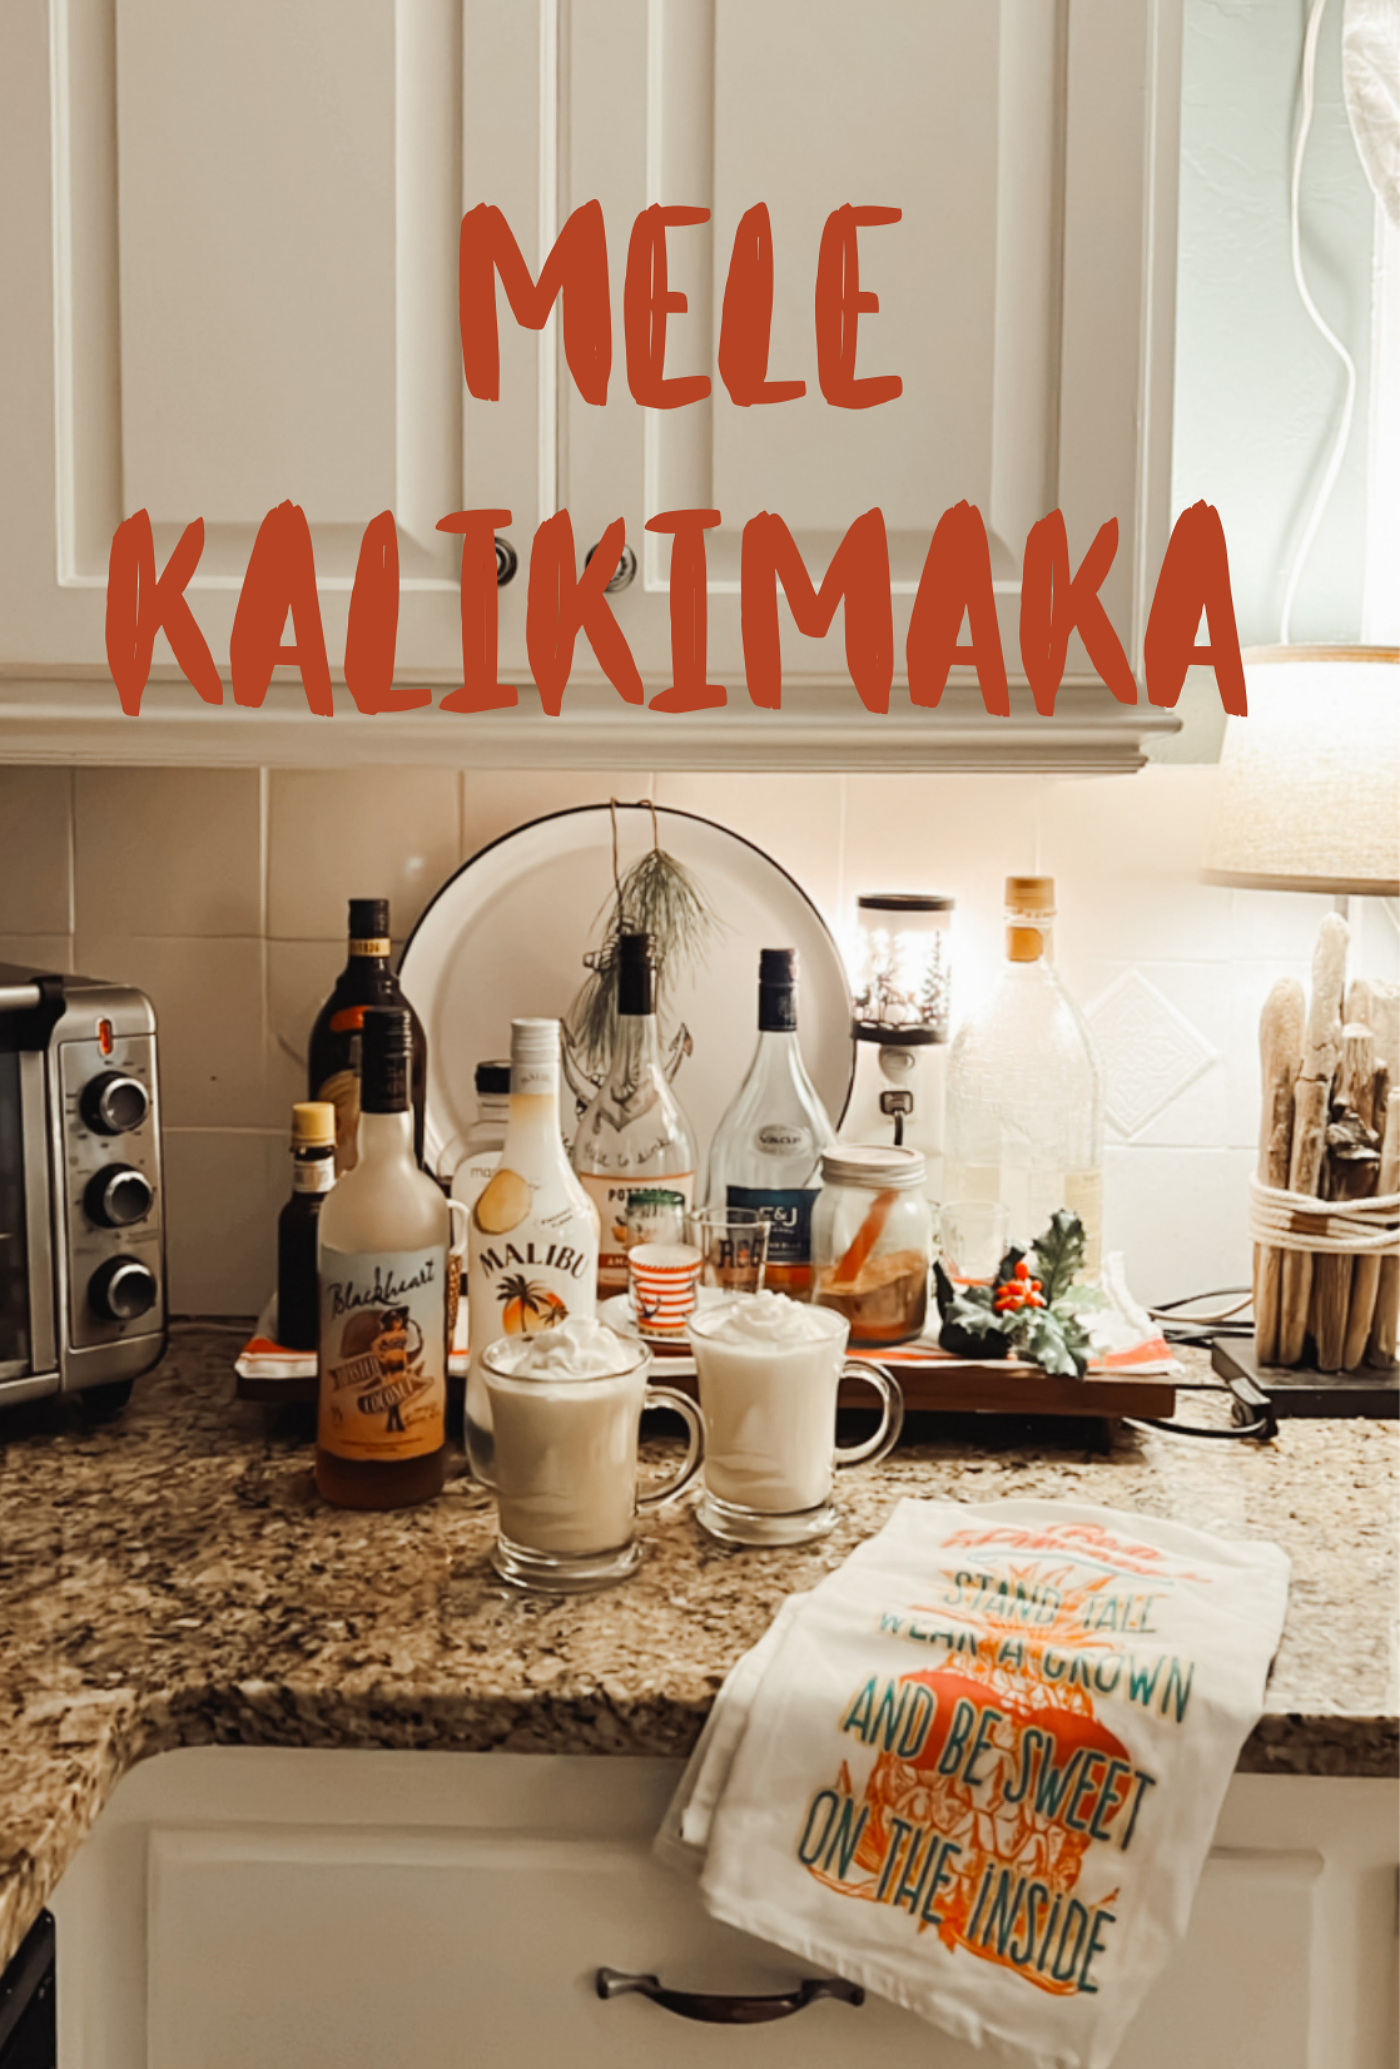 Mele Kalikimaka – A Holiday Cocktail